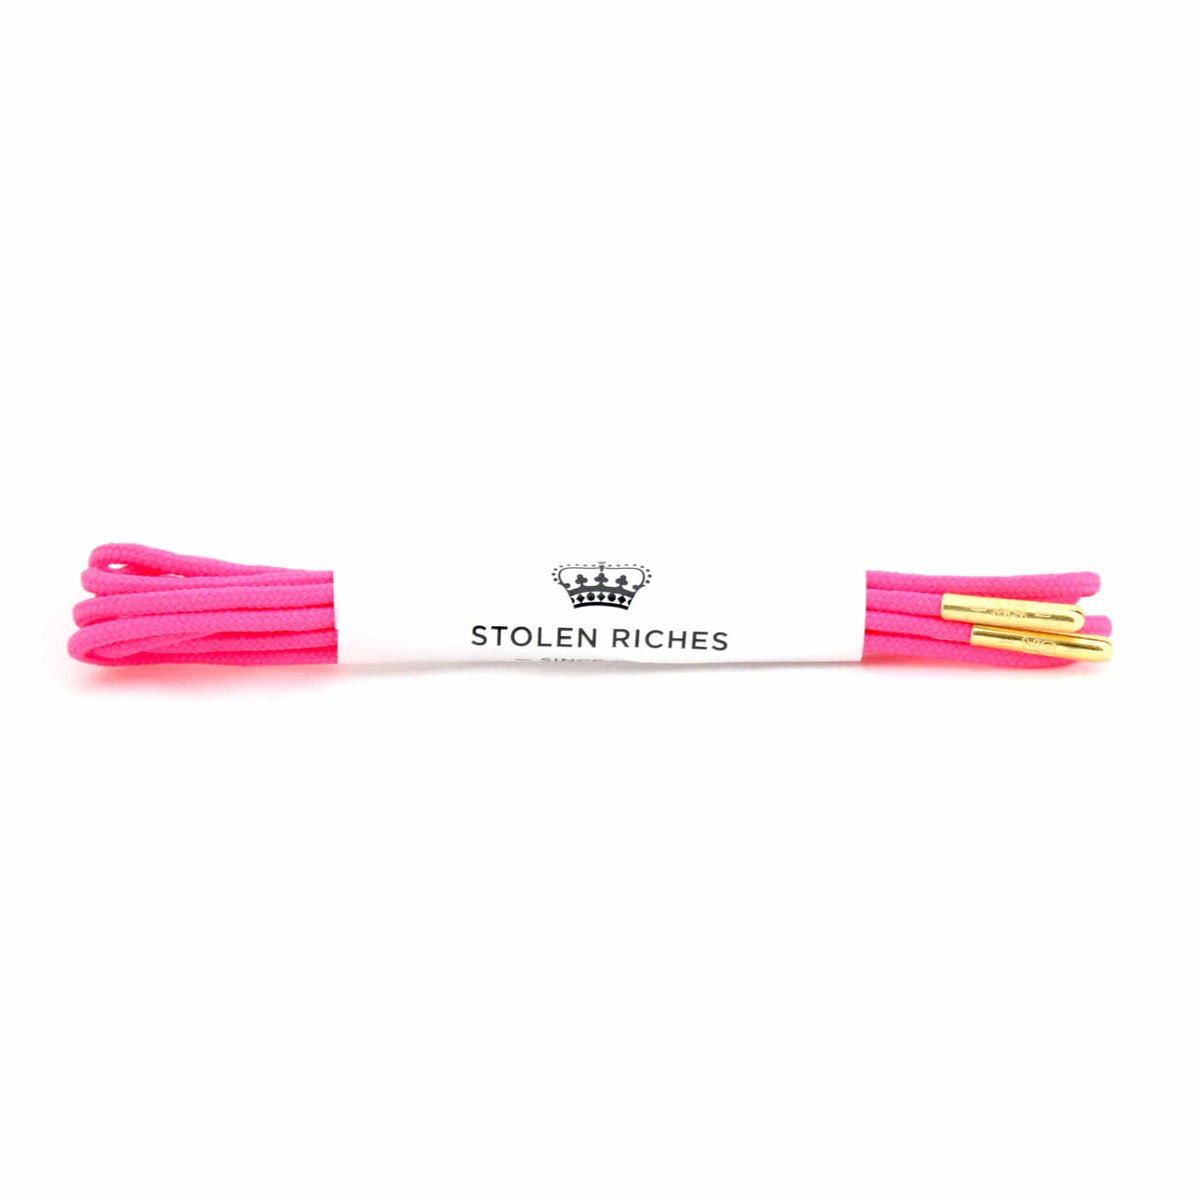 Neon pink laces for dress shoes, Length: 27"/69cm-Stolen Riches